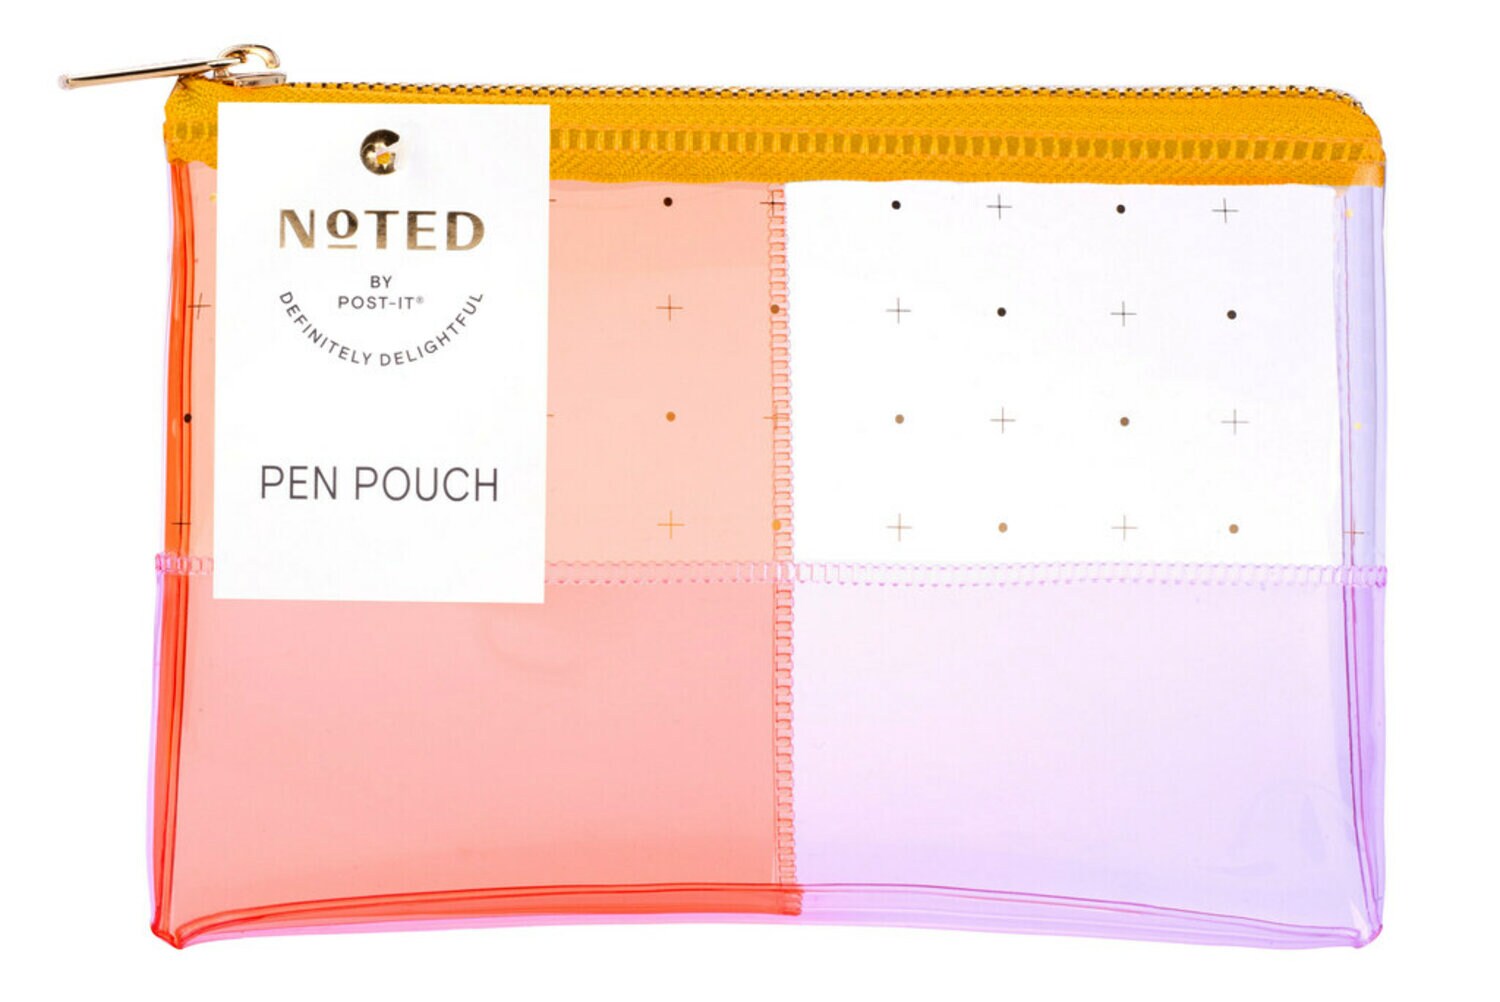 7100264765 - Post-it Pen Pouch NTD5-PP-PCH, One Pen Pouch